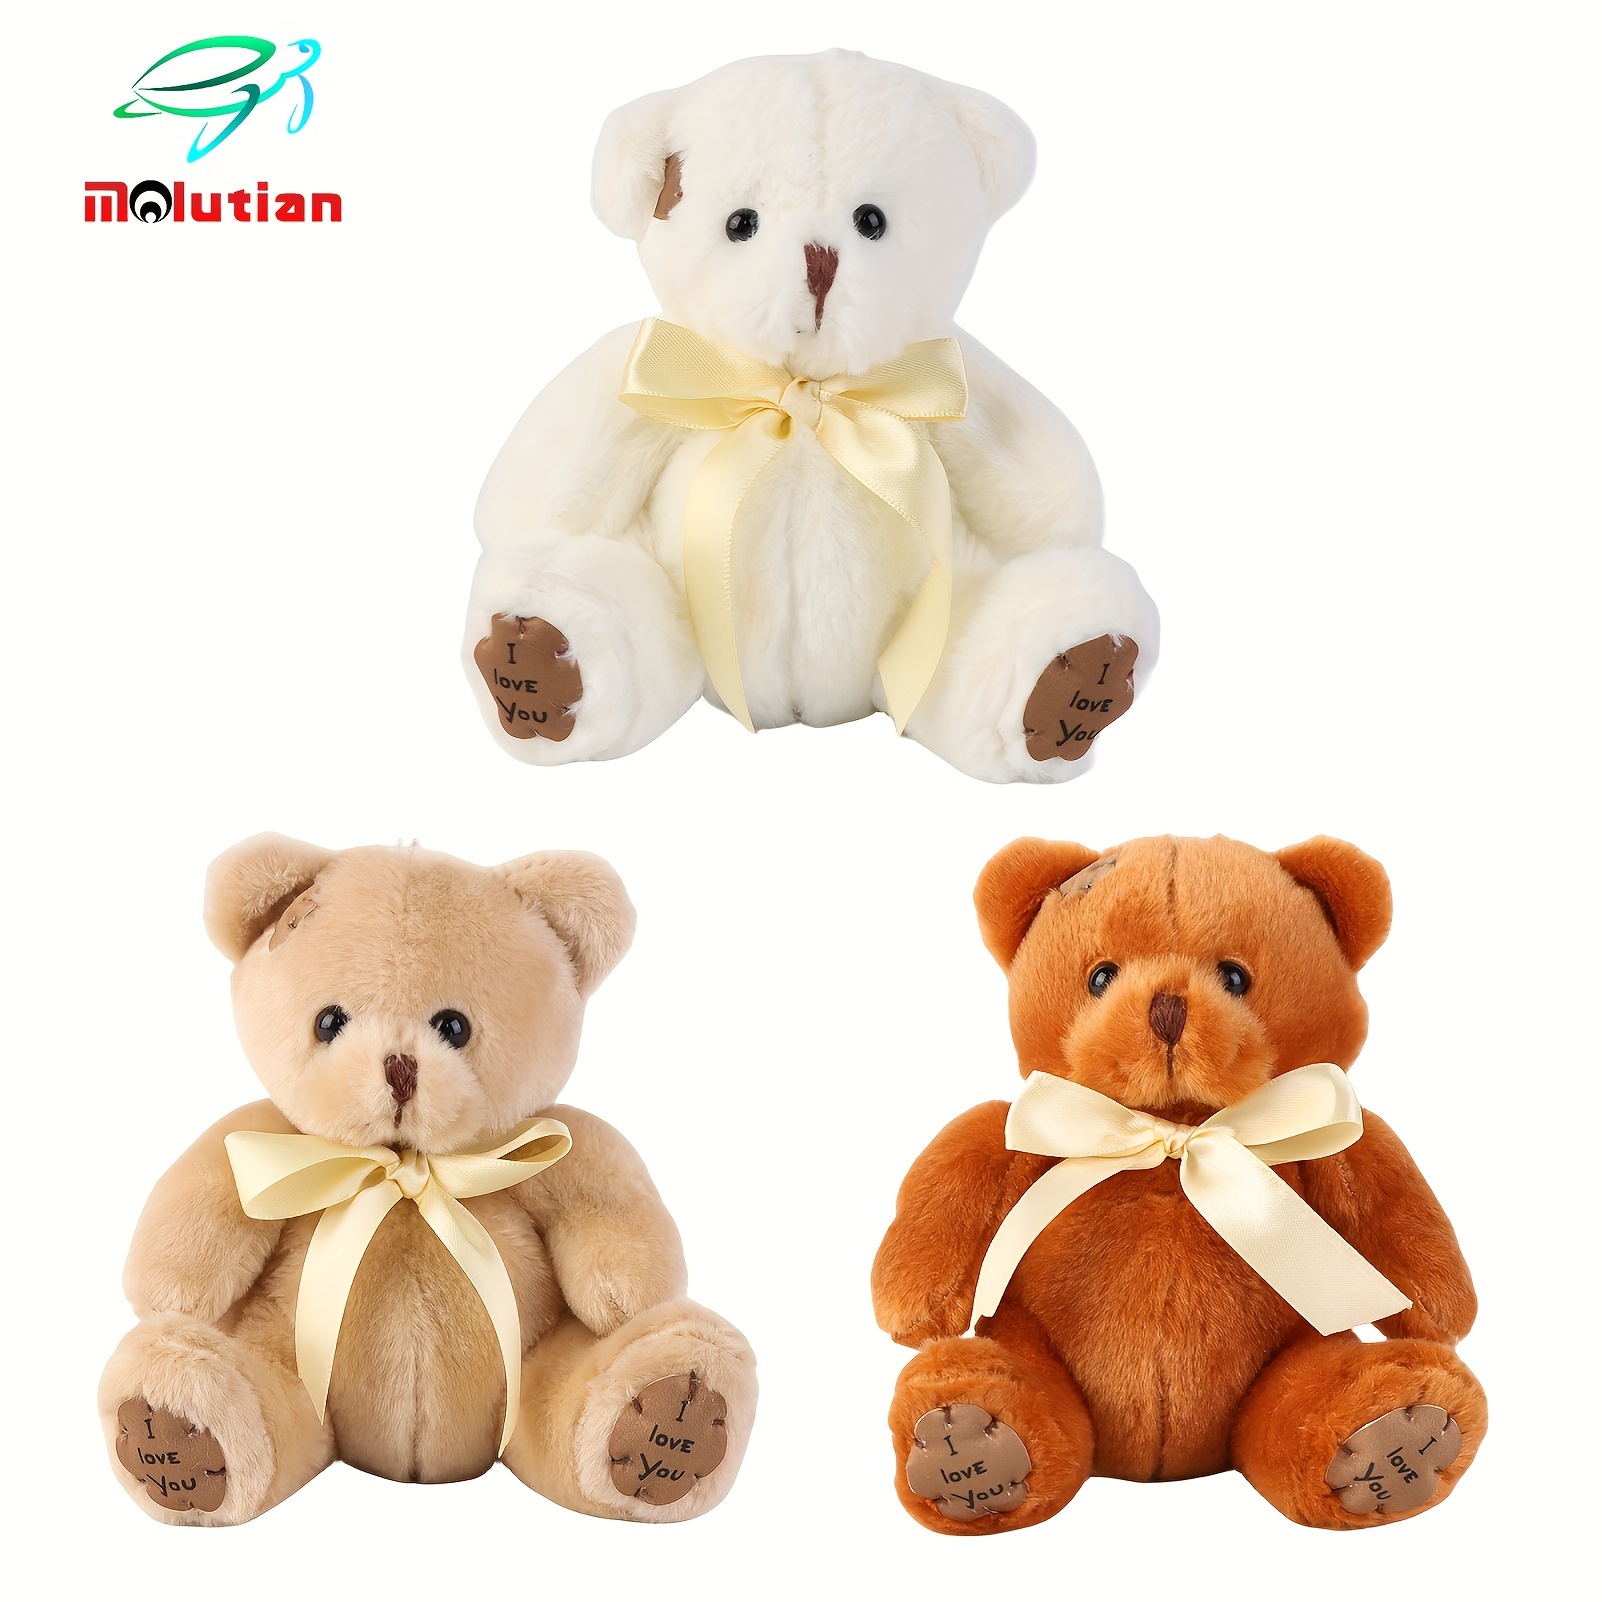 

6.69in Lovely Teddy Bear Plush Toys Stuffed Soft Animal Kawaii Dolls For Kids Baby Children Valentine Gift Birthday Gift Easter Gift